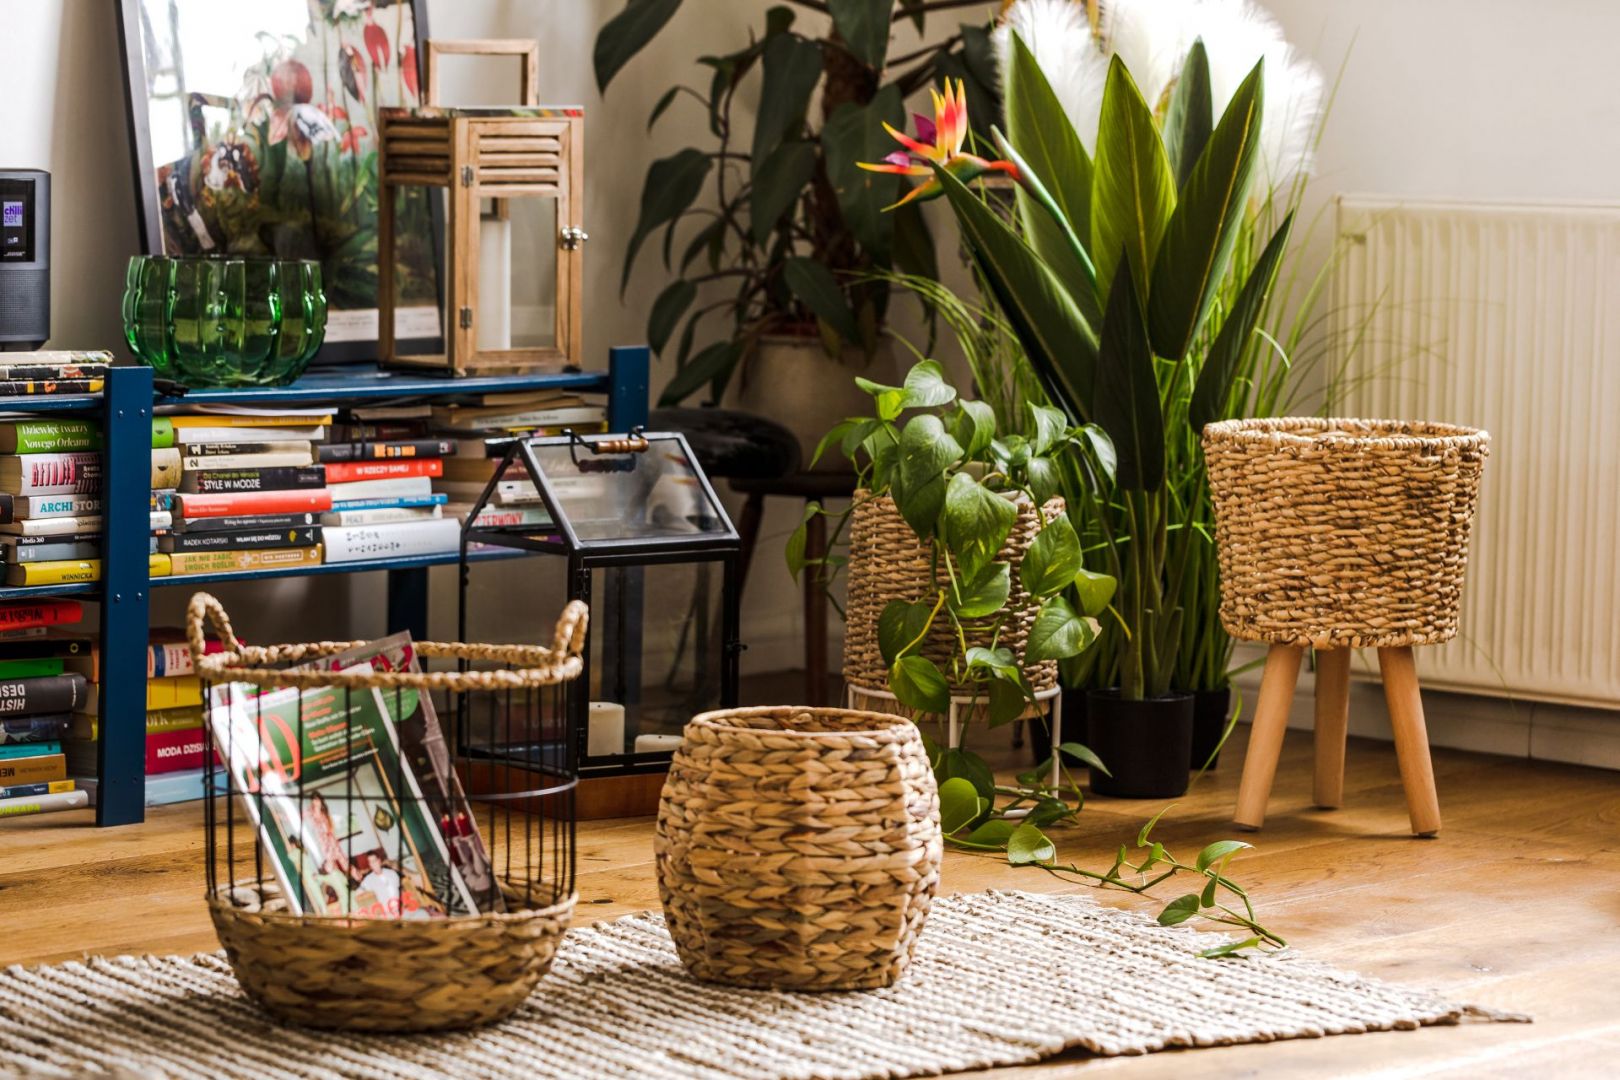 W kolekcji Tropical Plants od Home&You znajdziesz elementy wyplatane z morskiej trawy, rattanu i liści bananowca, a także drewno akacji, bambusa czy jesionu. Fot. Home&You